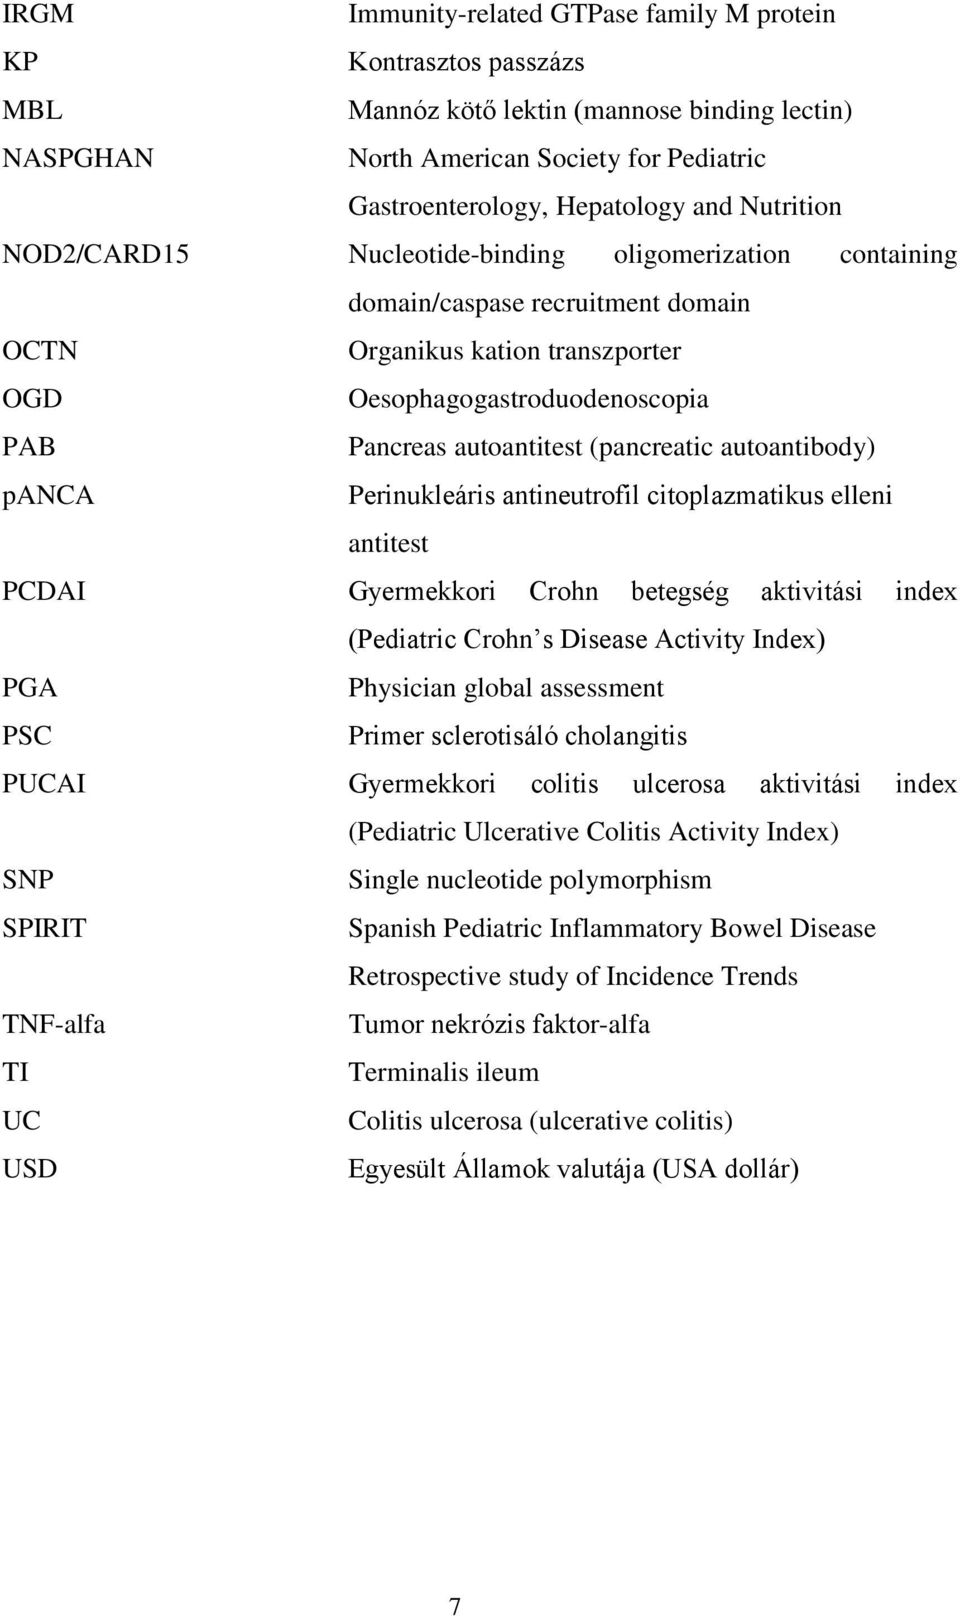 (pancreatic autoantibody) panca Perinukleáris antineutrofil citoplazmatikus elleni antitest PCDAI Gyermekkori Crohn betegség aktivitási index (Pediatric Crohn s Disease Activity Index) PGA Physician